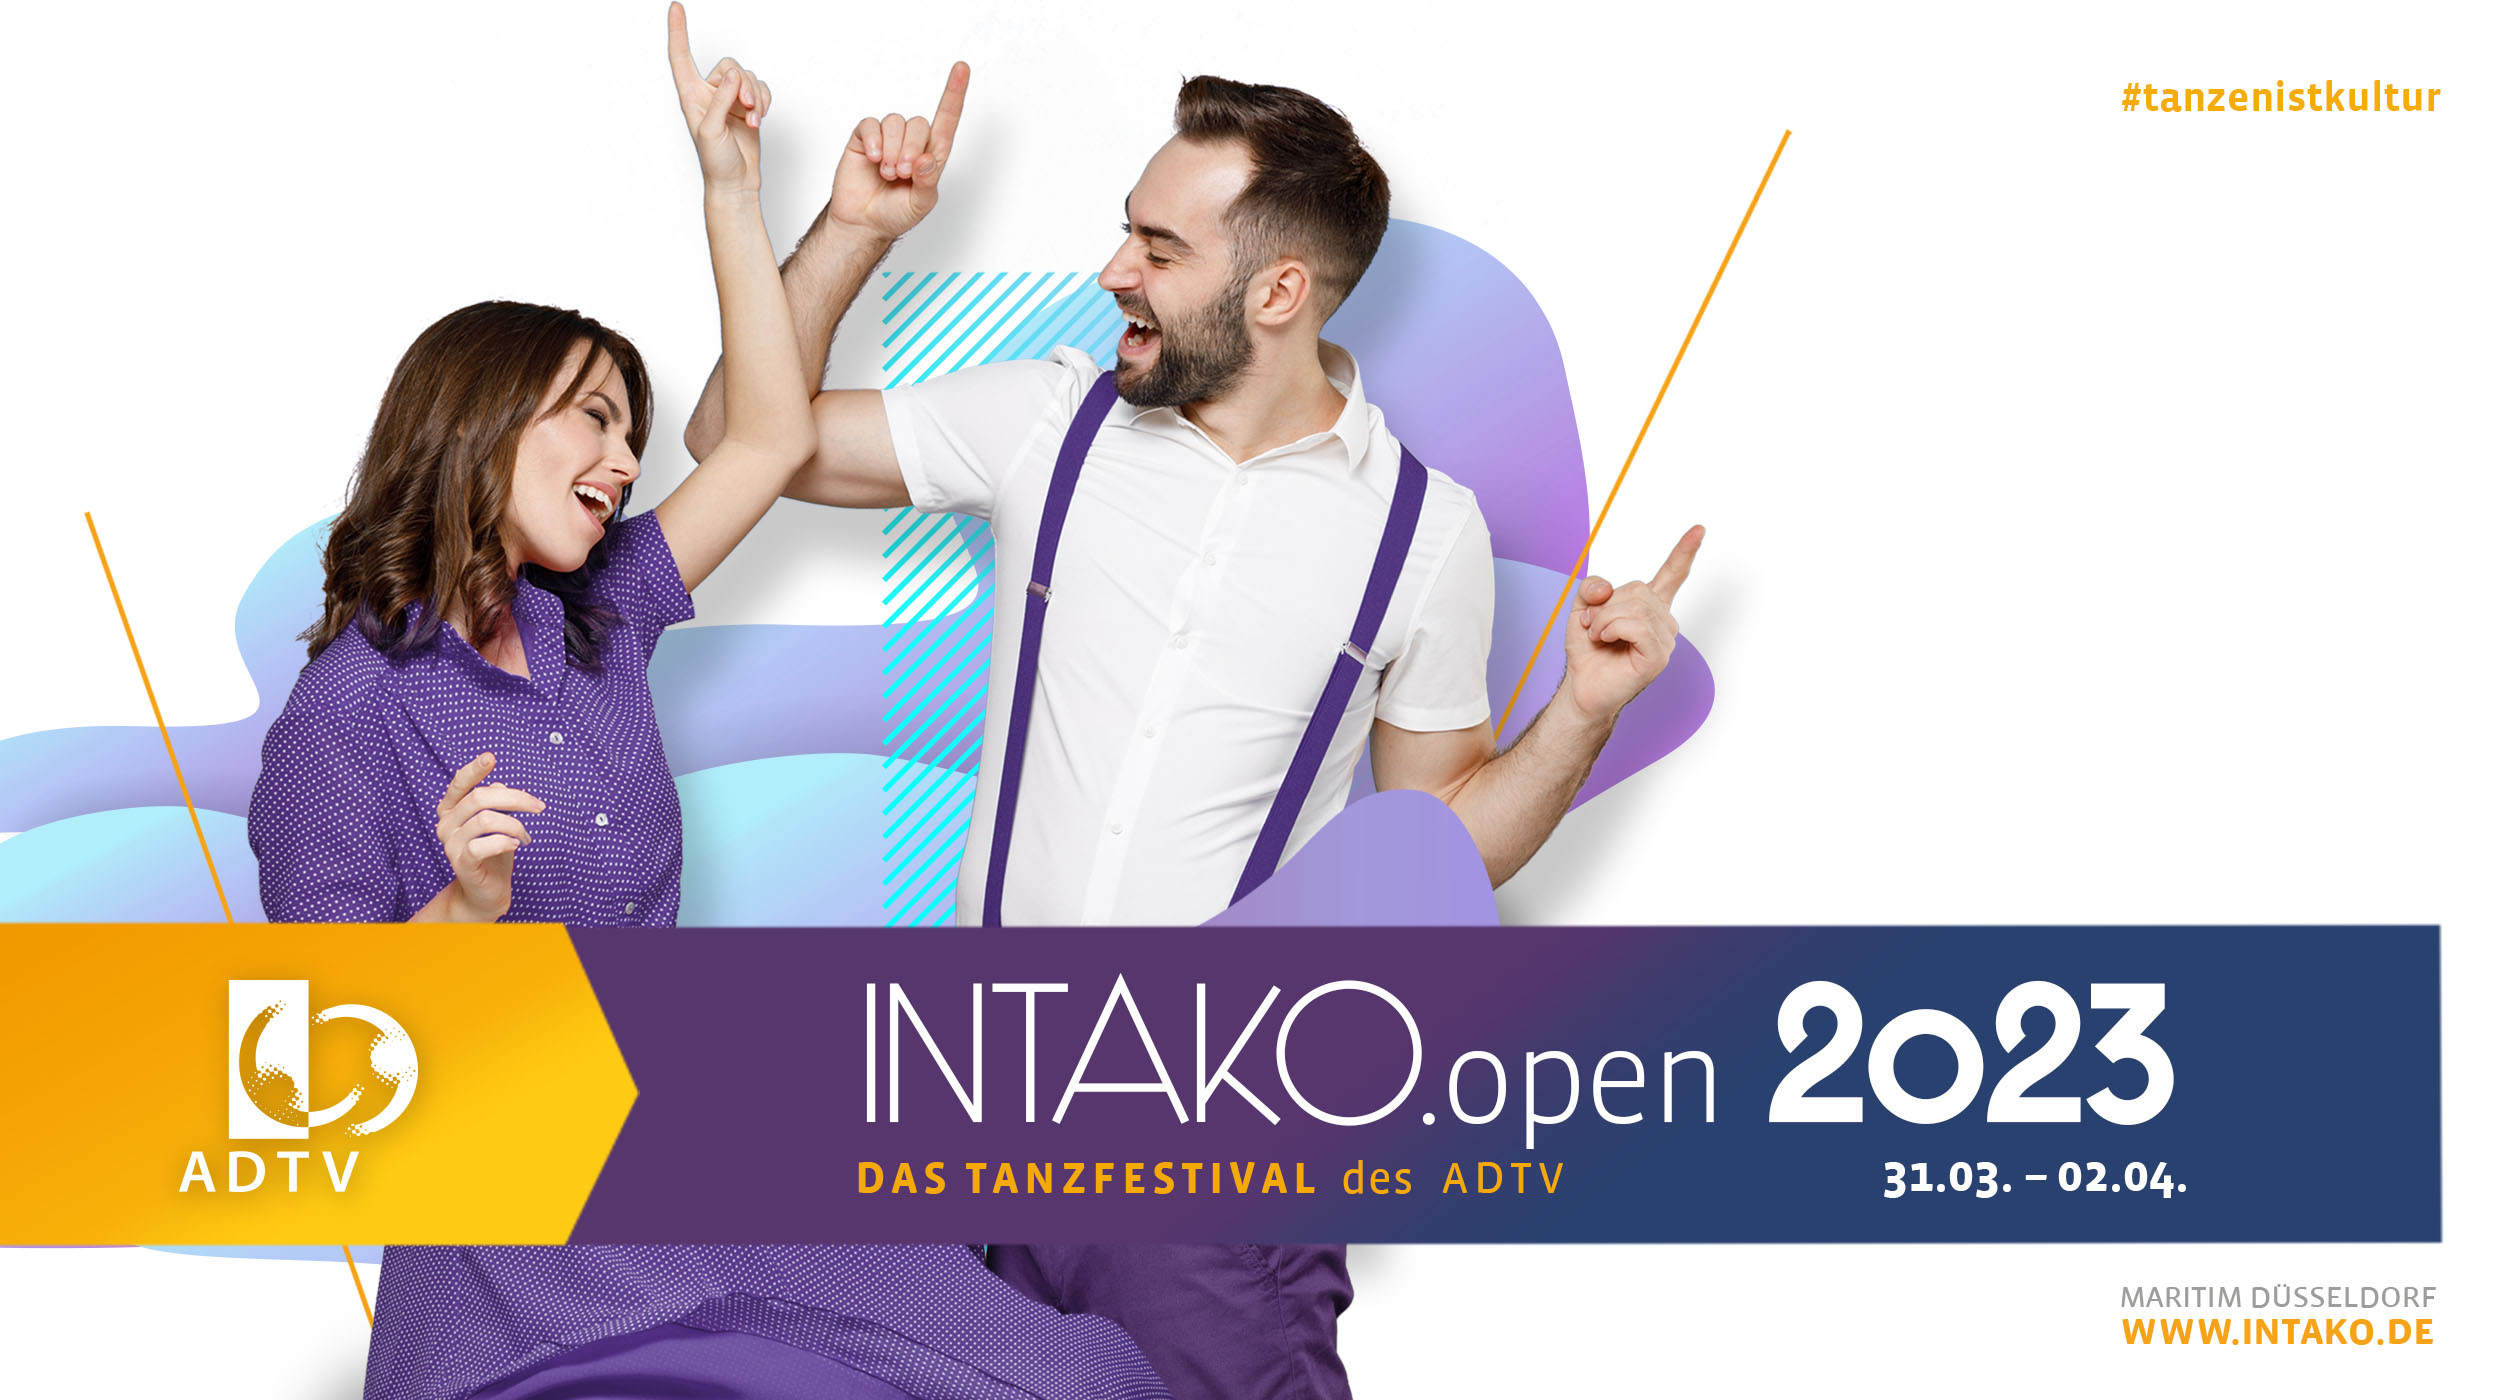 INTAKO.open